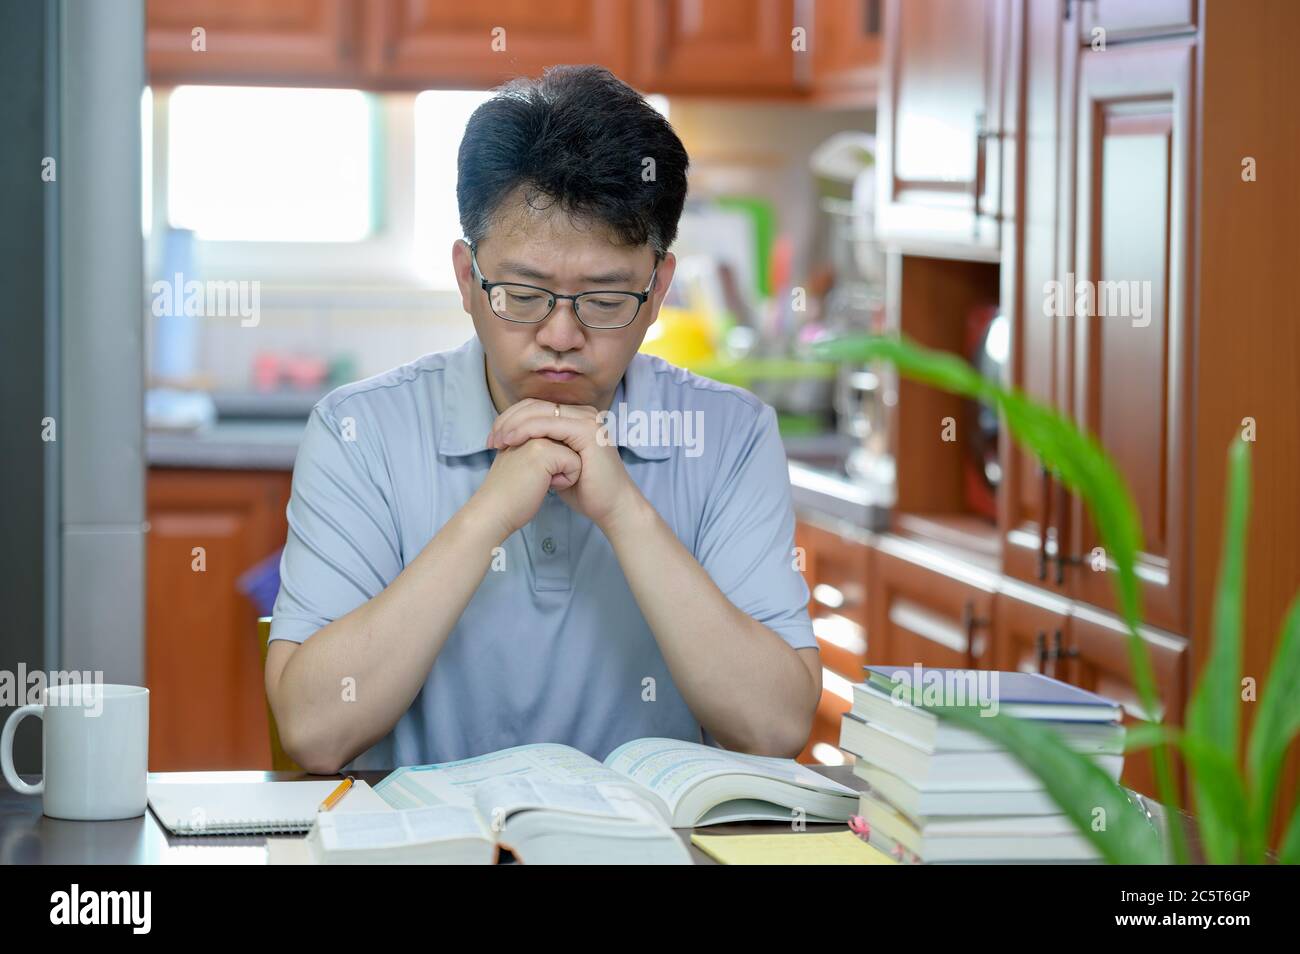 Asiatischer Mann mittleren Alters, der zu Hause am Schreibtisch sitzt, ein Buch liest und studiert. Stockfoto